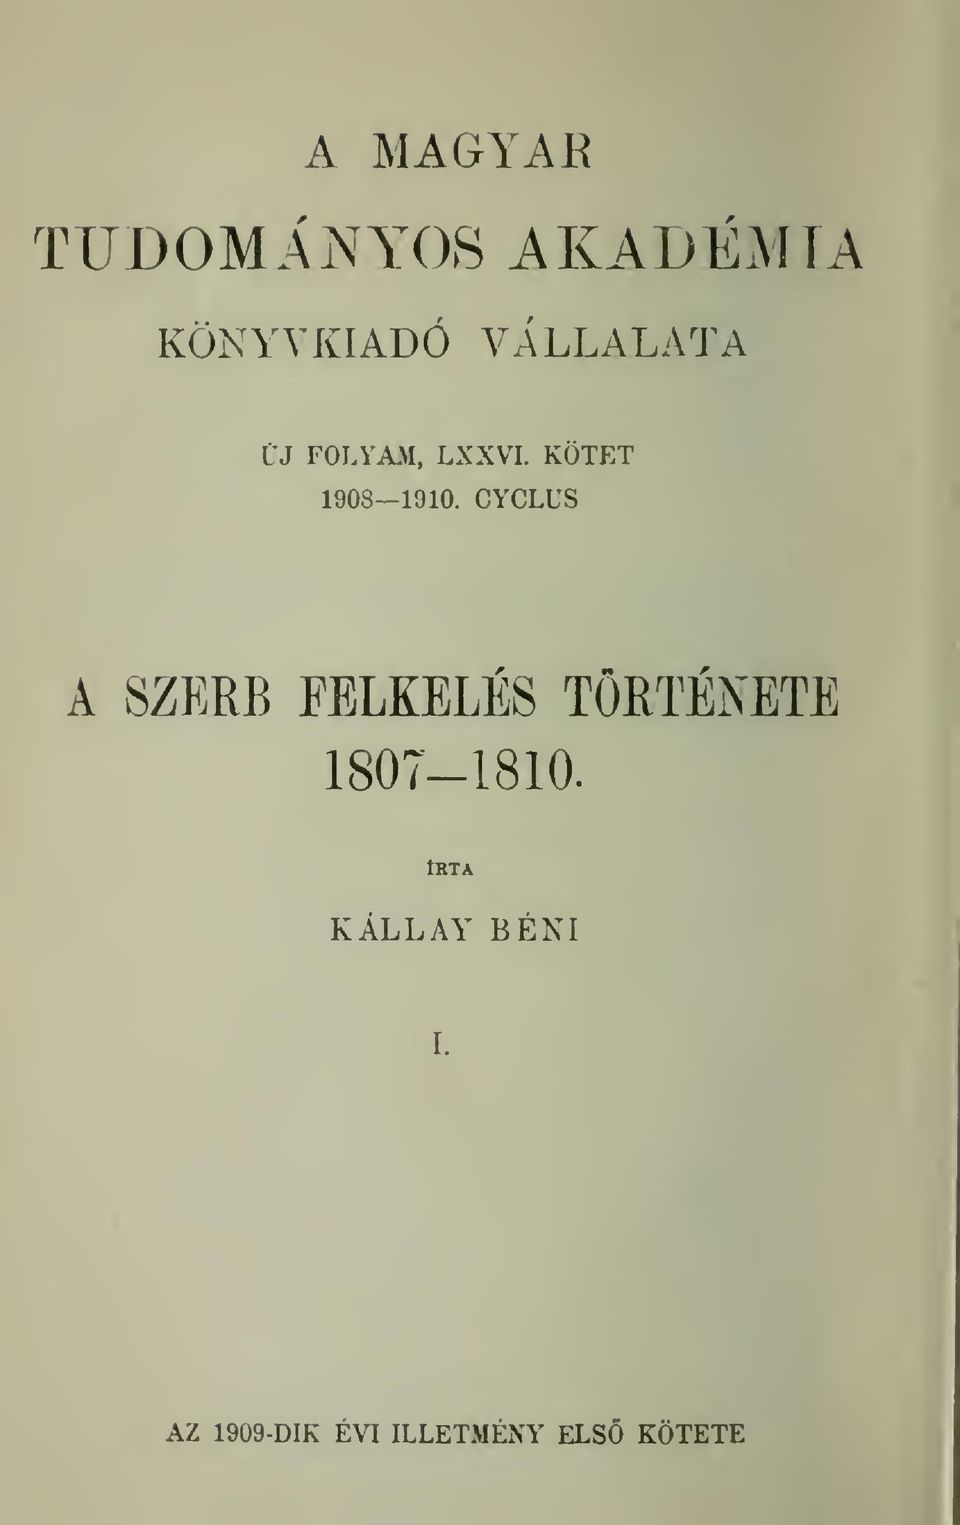 CYCLUS A SZERB FELKELES TORTENETE 1807-1810.